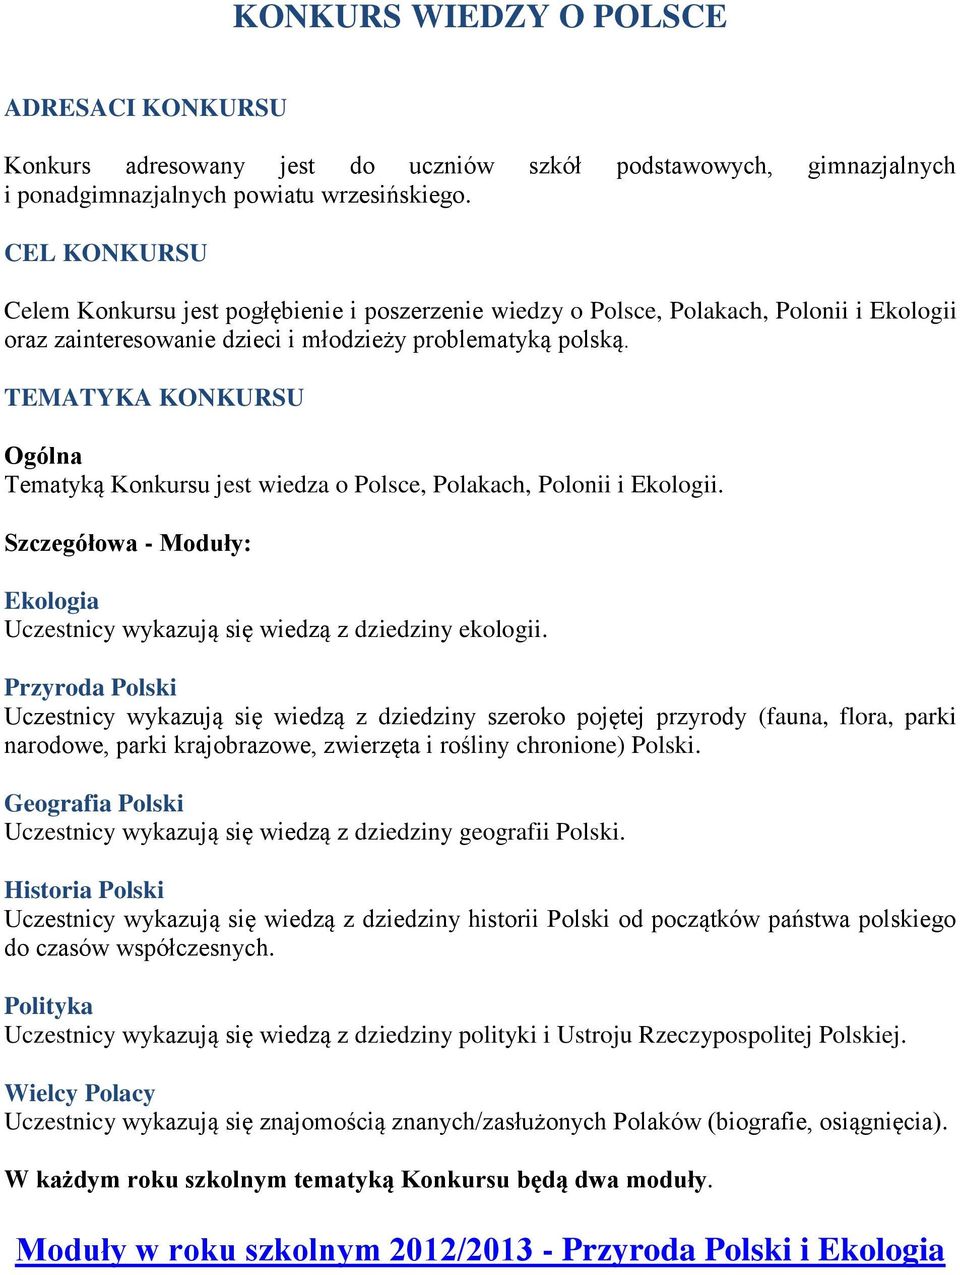 TEMATYKA KONKURSU Ogólna Tematyką Konkursu jest wiedza o Polsce, Polakach, Polonii i Ekologii. Szczegółowa - Moduły: Ekologia Uczestnicy wykazują się wiedzą z dziedziny ekologii.